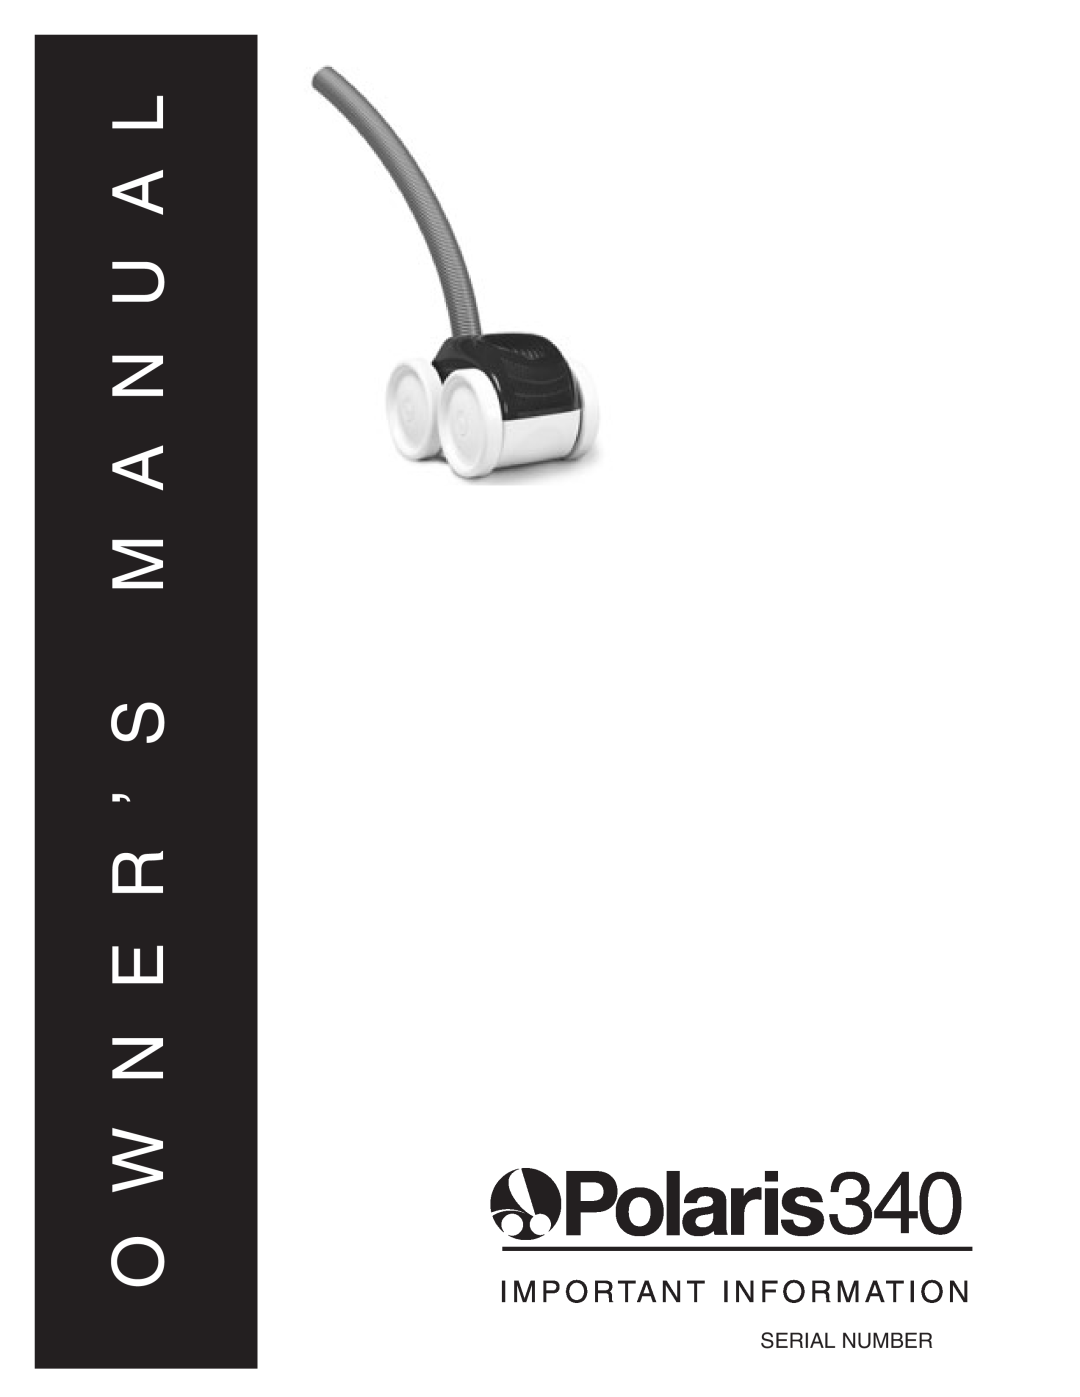 Polaris 340 owner manual M A N U A L, I M P O Rta N T I N F O R M At I O N, Serial Number 